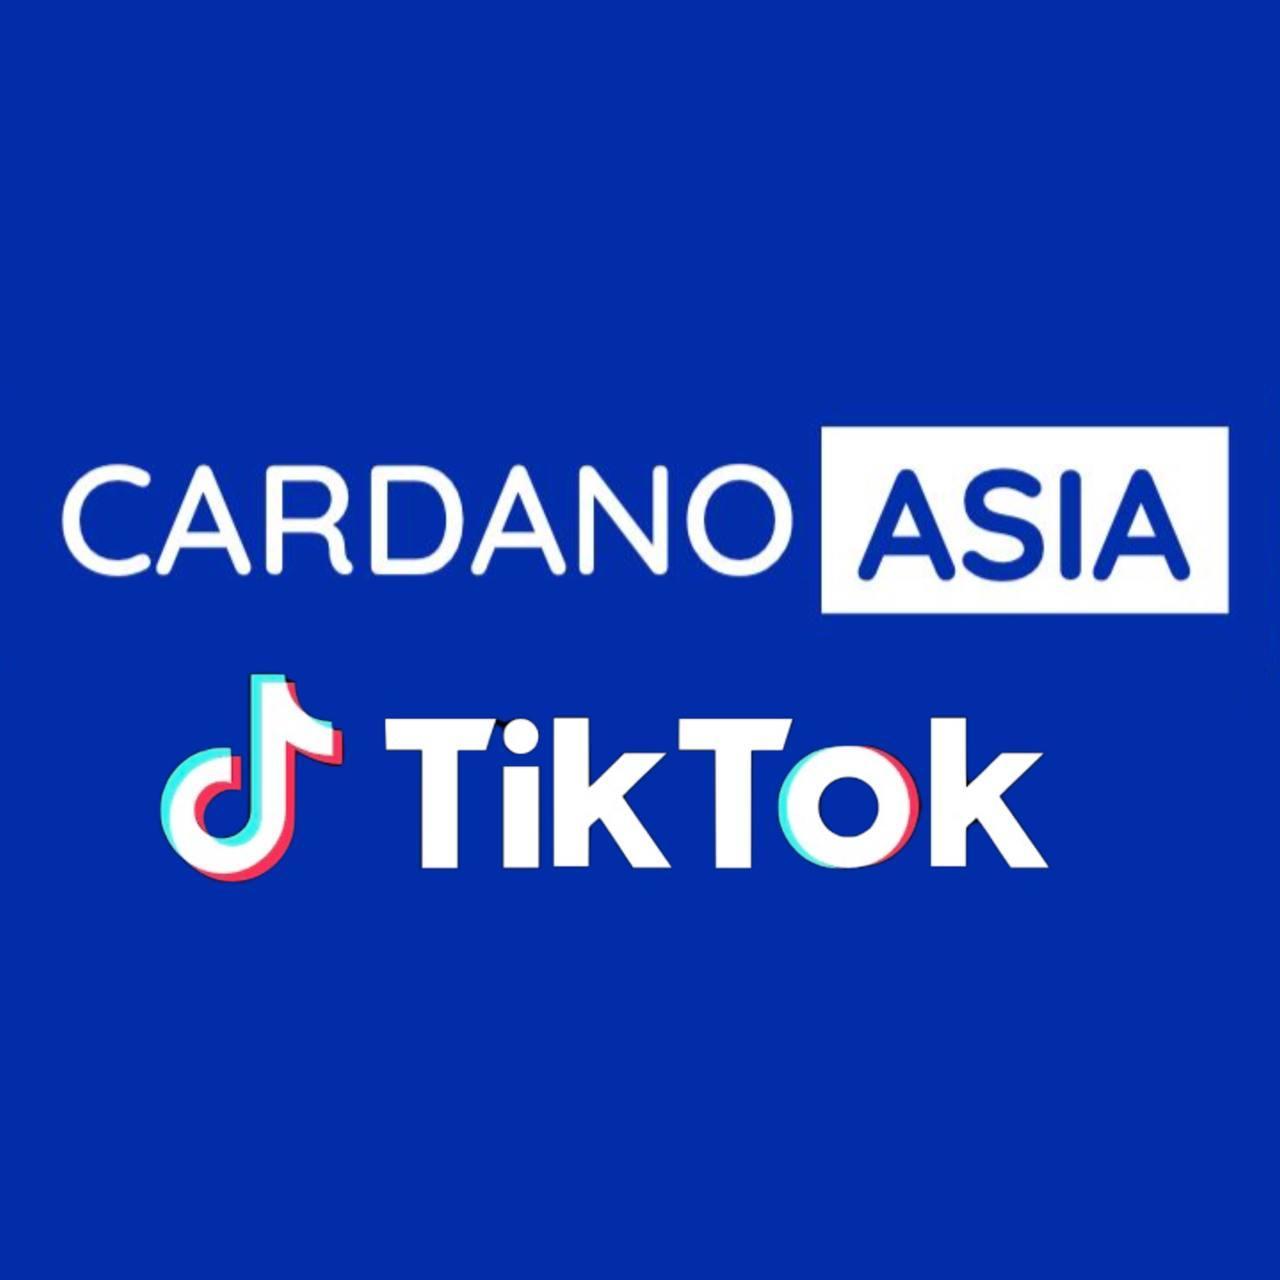 Cardano Asia Tiktok channel